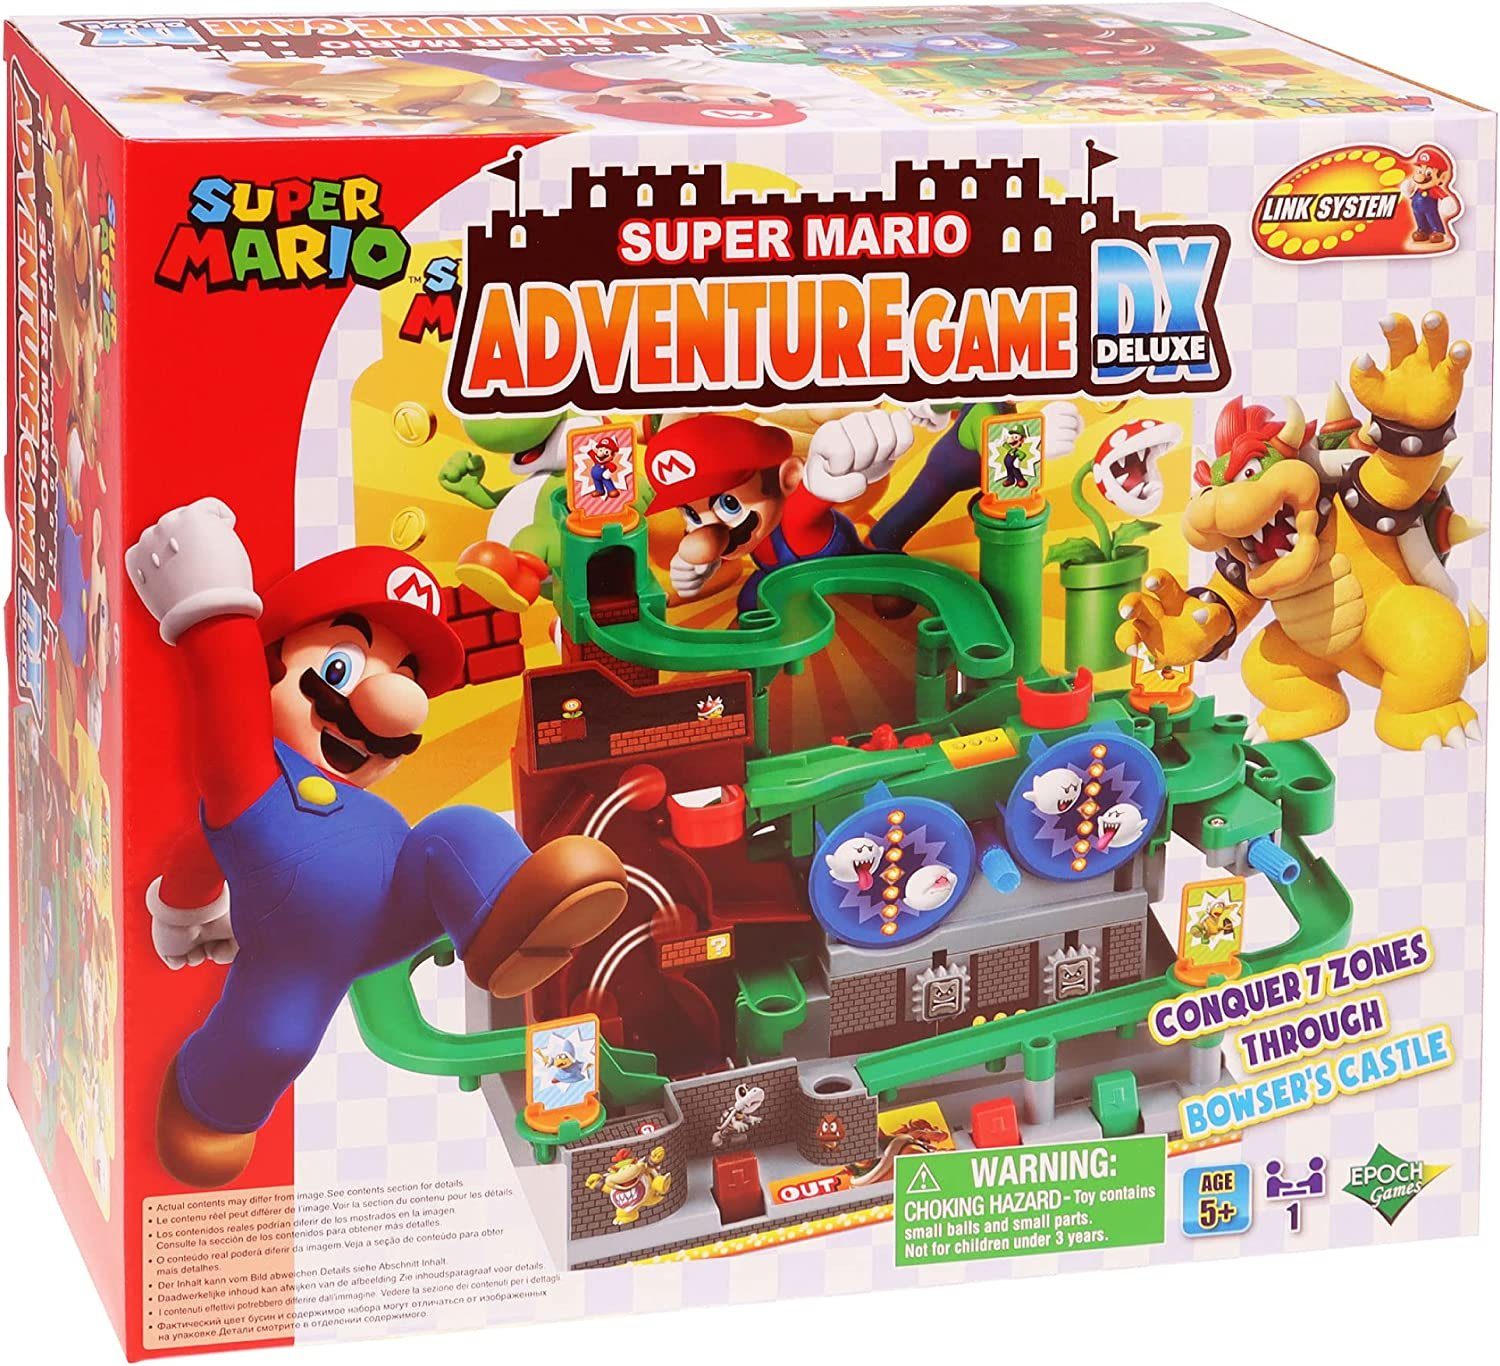 EPOCH Games Spiel, Kinderspiel Super Mario "Adventure Game Deluxe" 1 Ігриr ab 5 Jahren